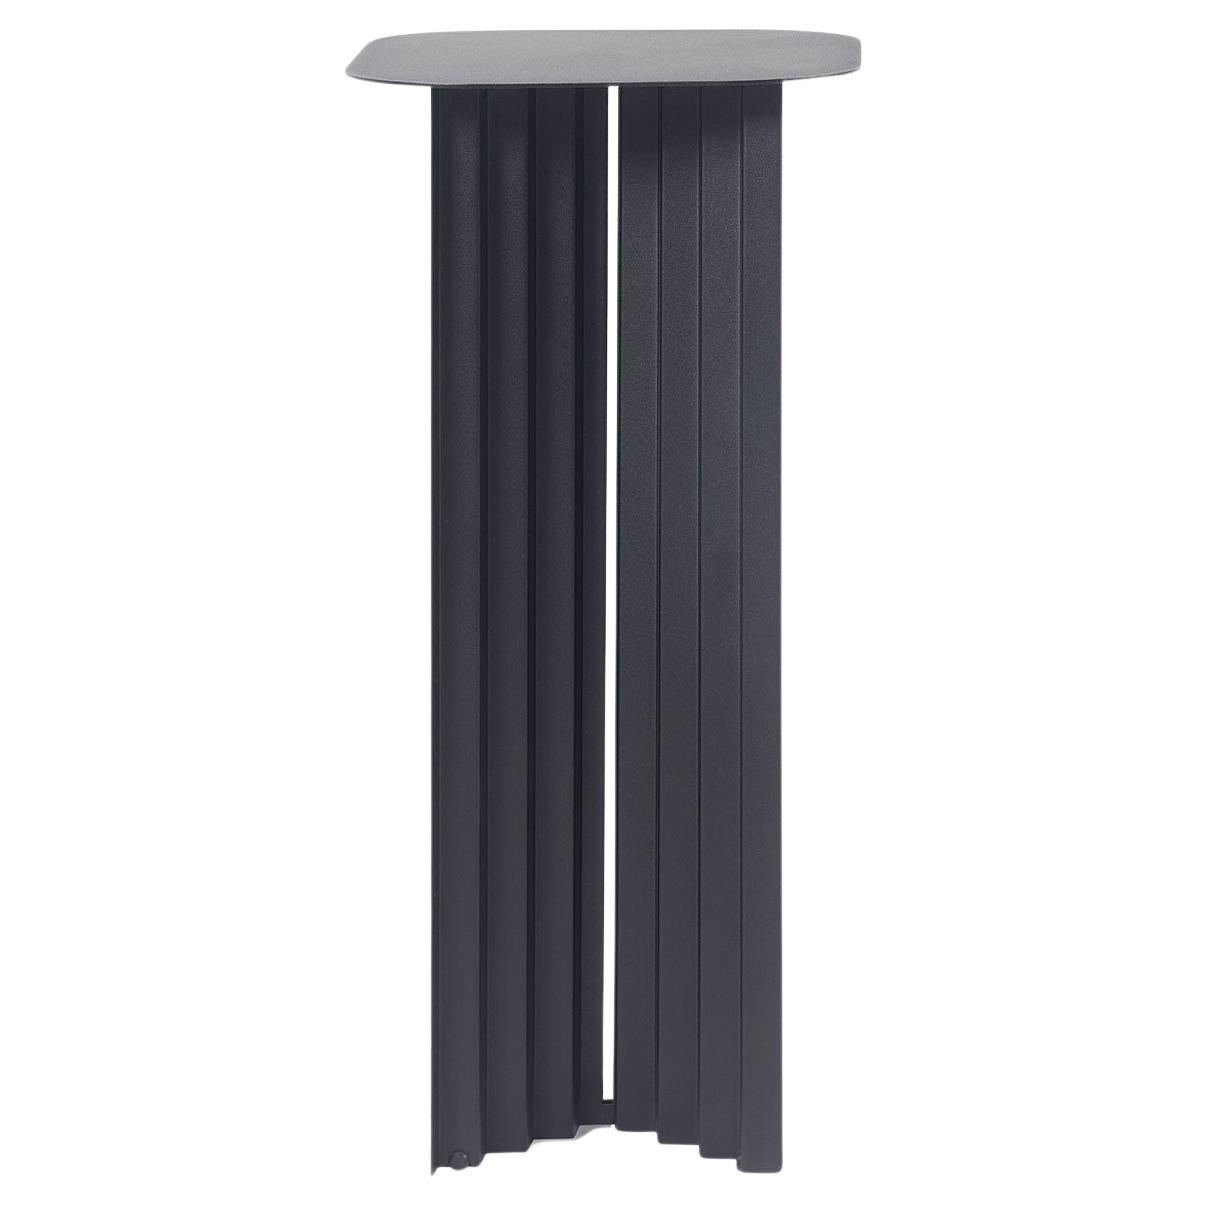 RS Barcelona Plec Steel Pedestal, black